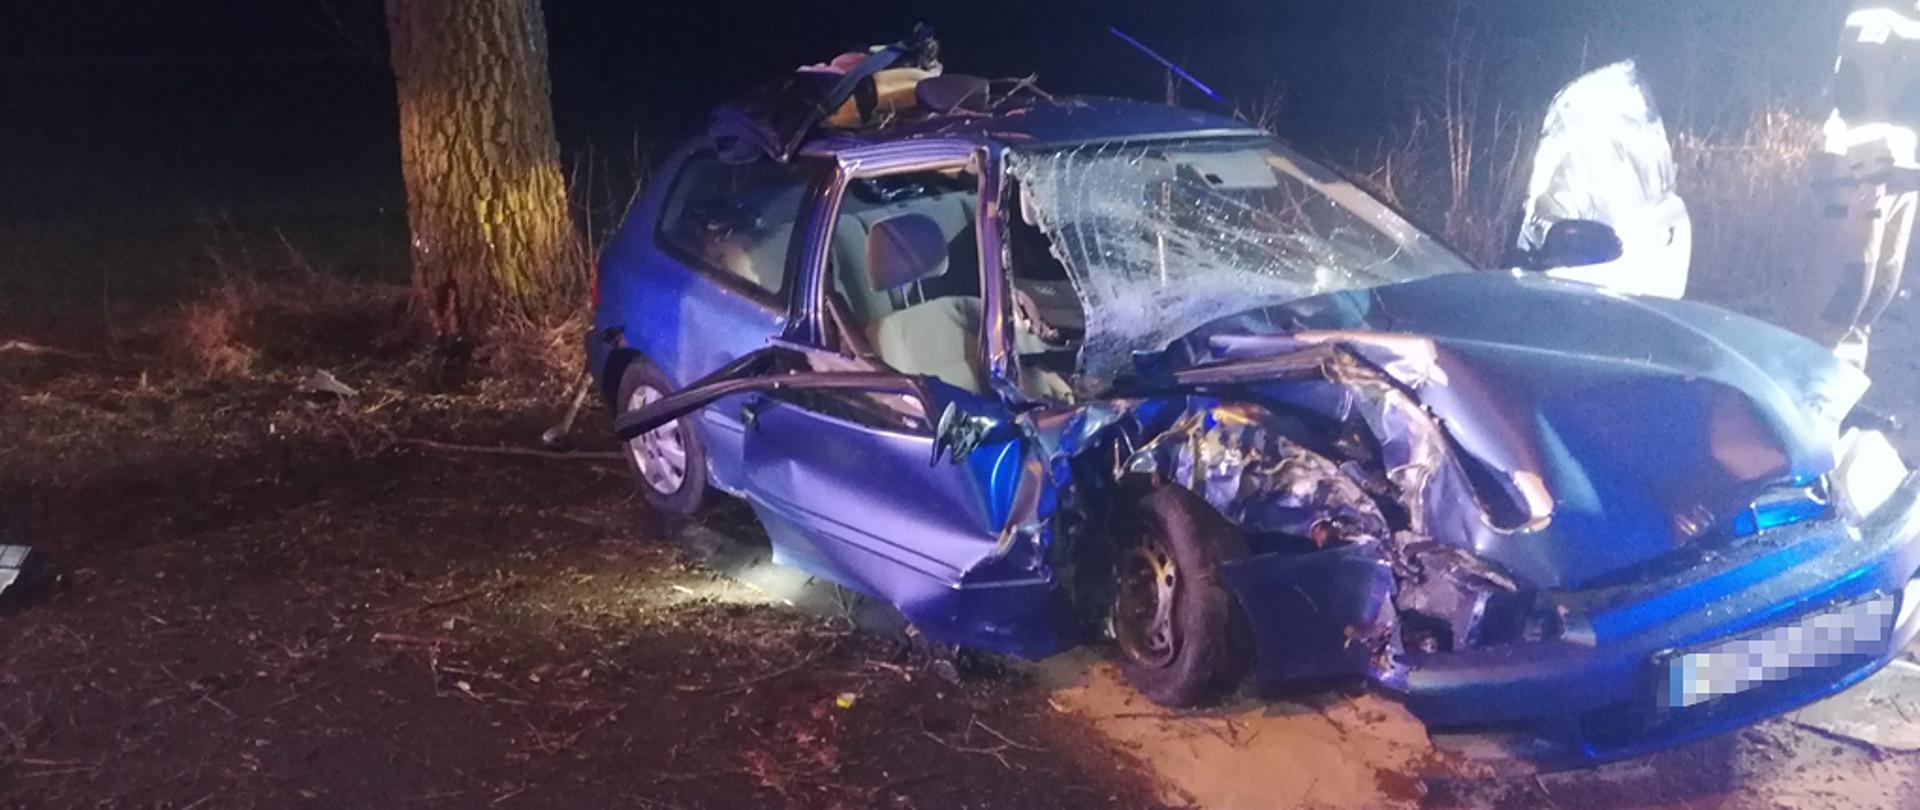 Zdjęcie przedstawia rozbity samochód osobowy koloru niebieskiego, po uderzeniu w drzewo. Rozbity prawy przód pojazdu, uszkodzenia drzwi i głównej szyby. Plamy wyciekłych płynów pod pojazdem zasypane sorbentem.